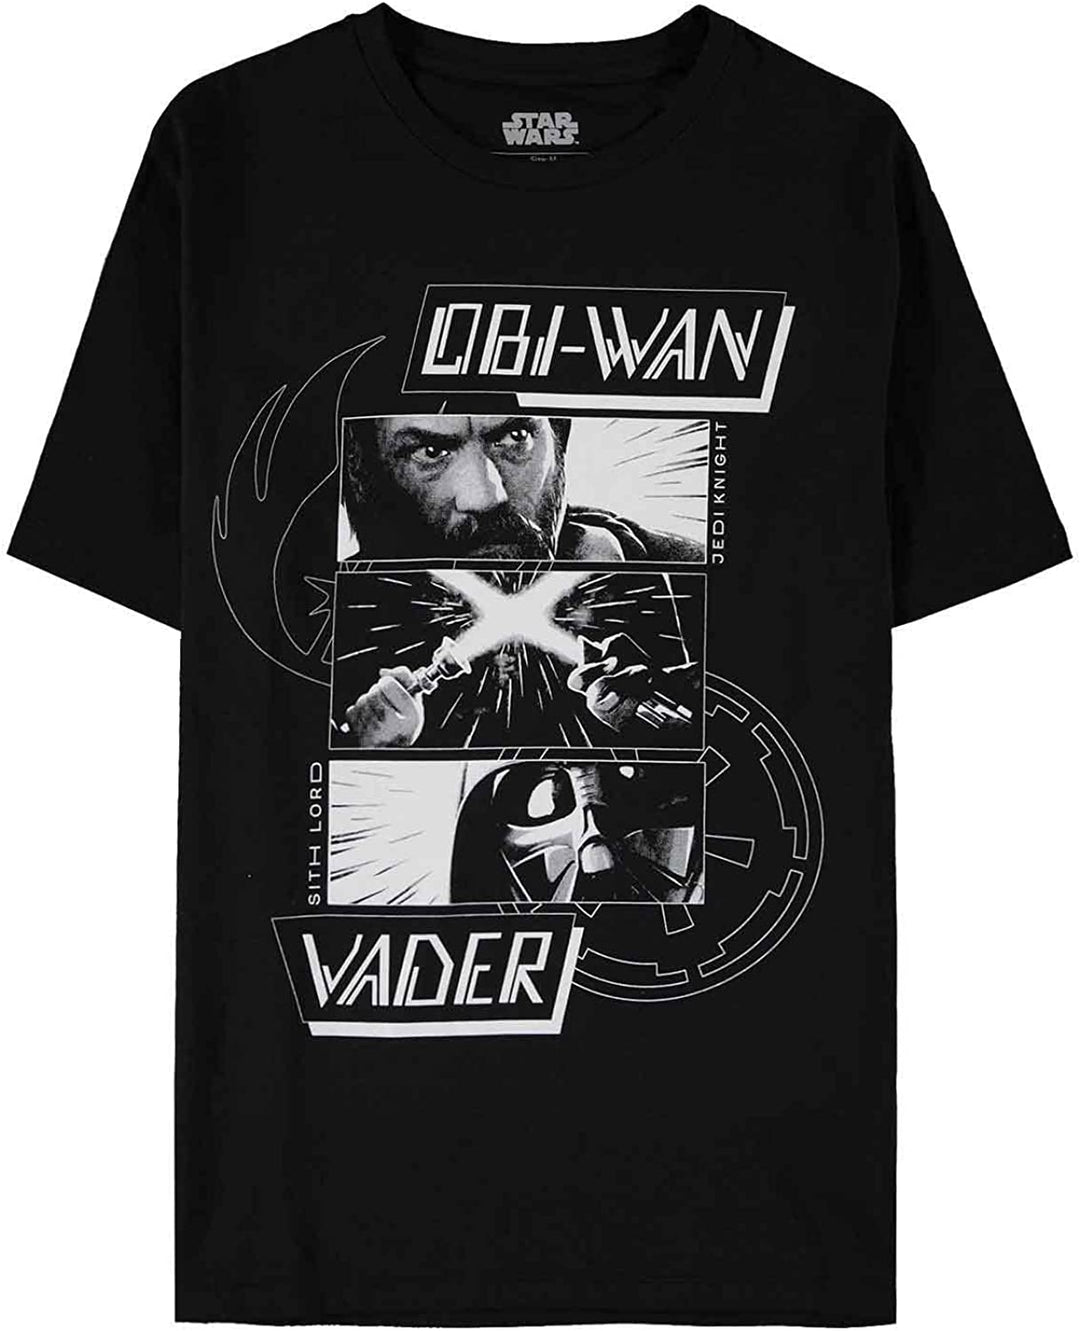 Obi-Wan Kenobi Men's Boys' Regular Fit Short-Sleeved T-Shirt, black, L